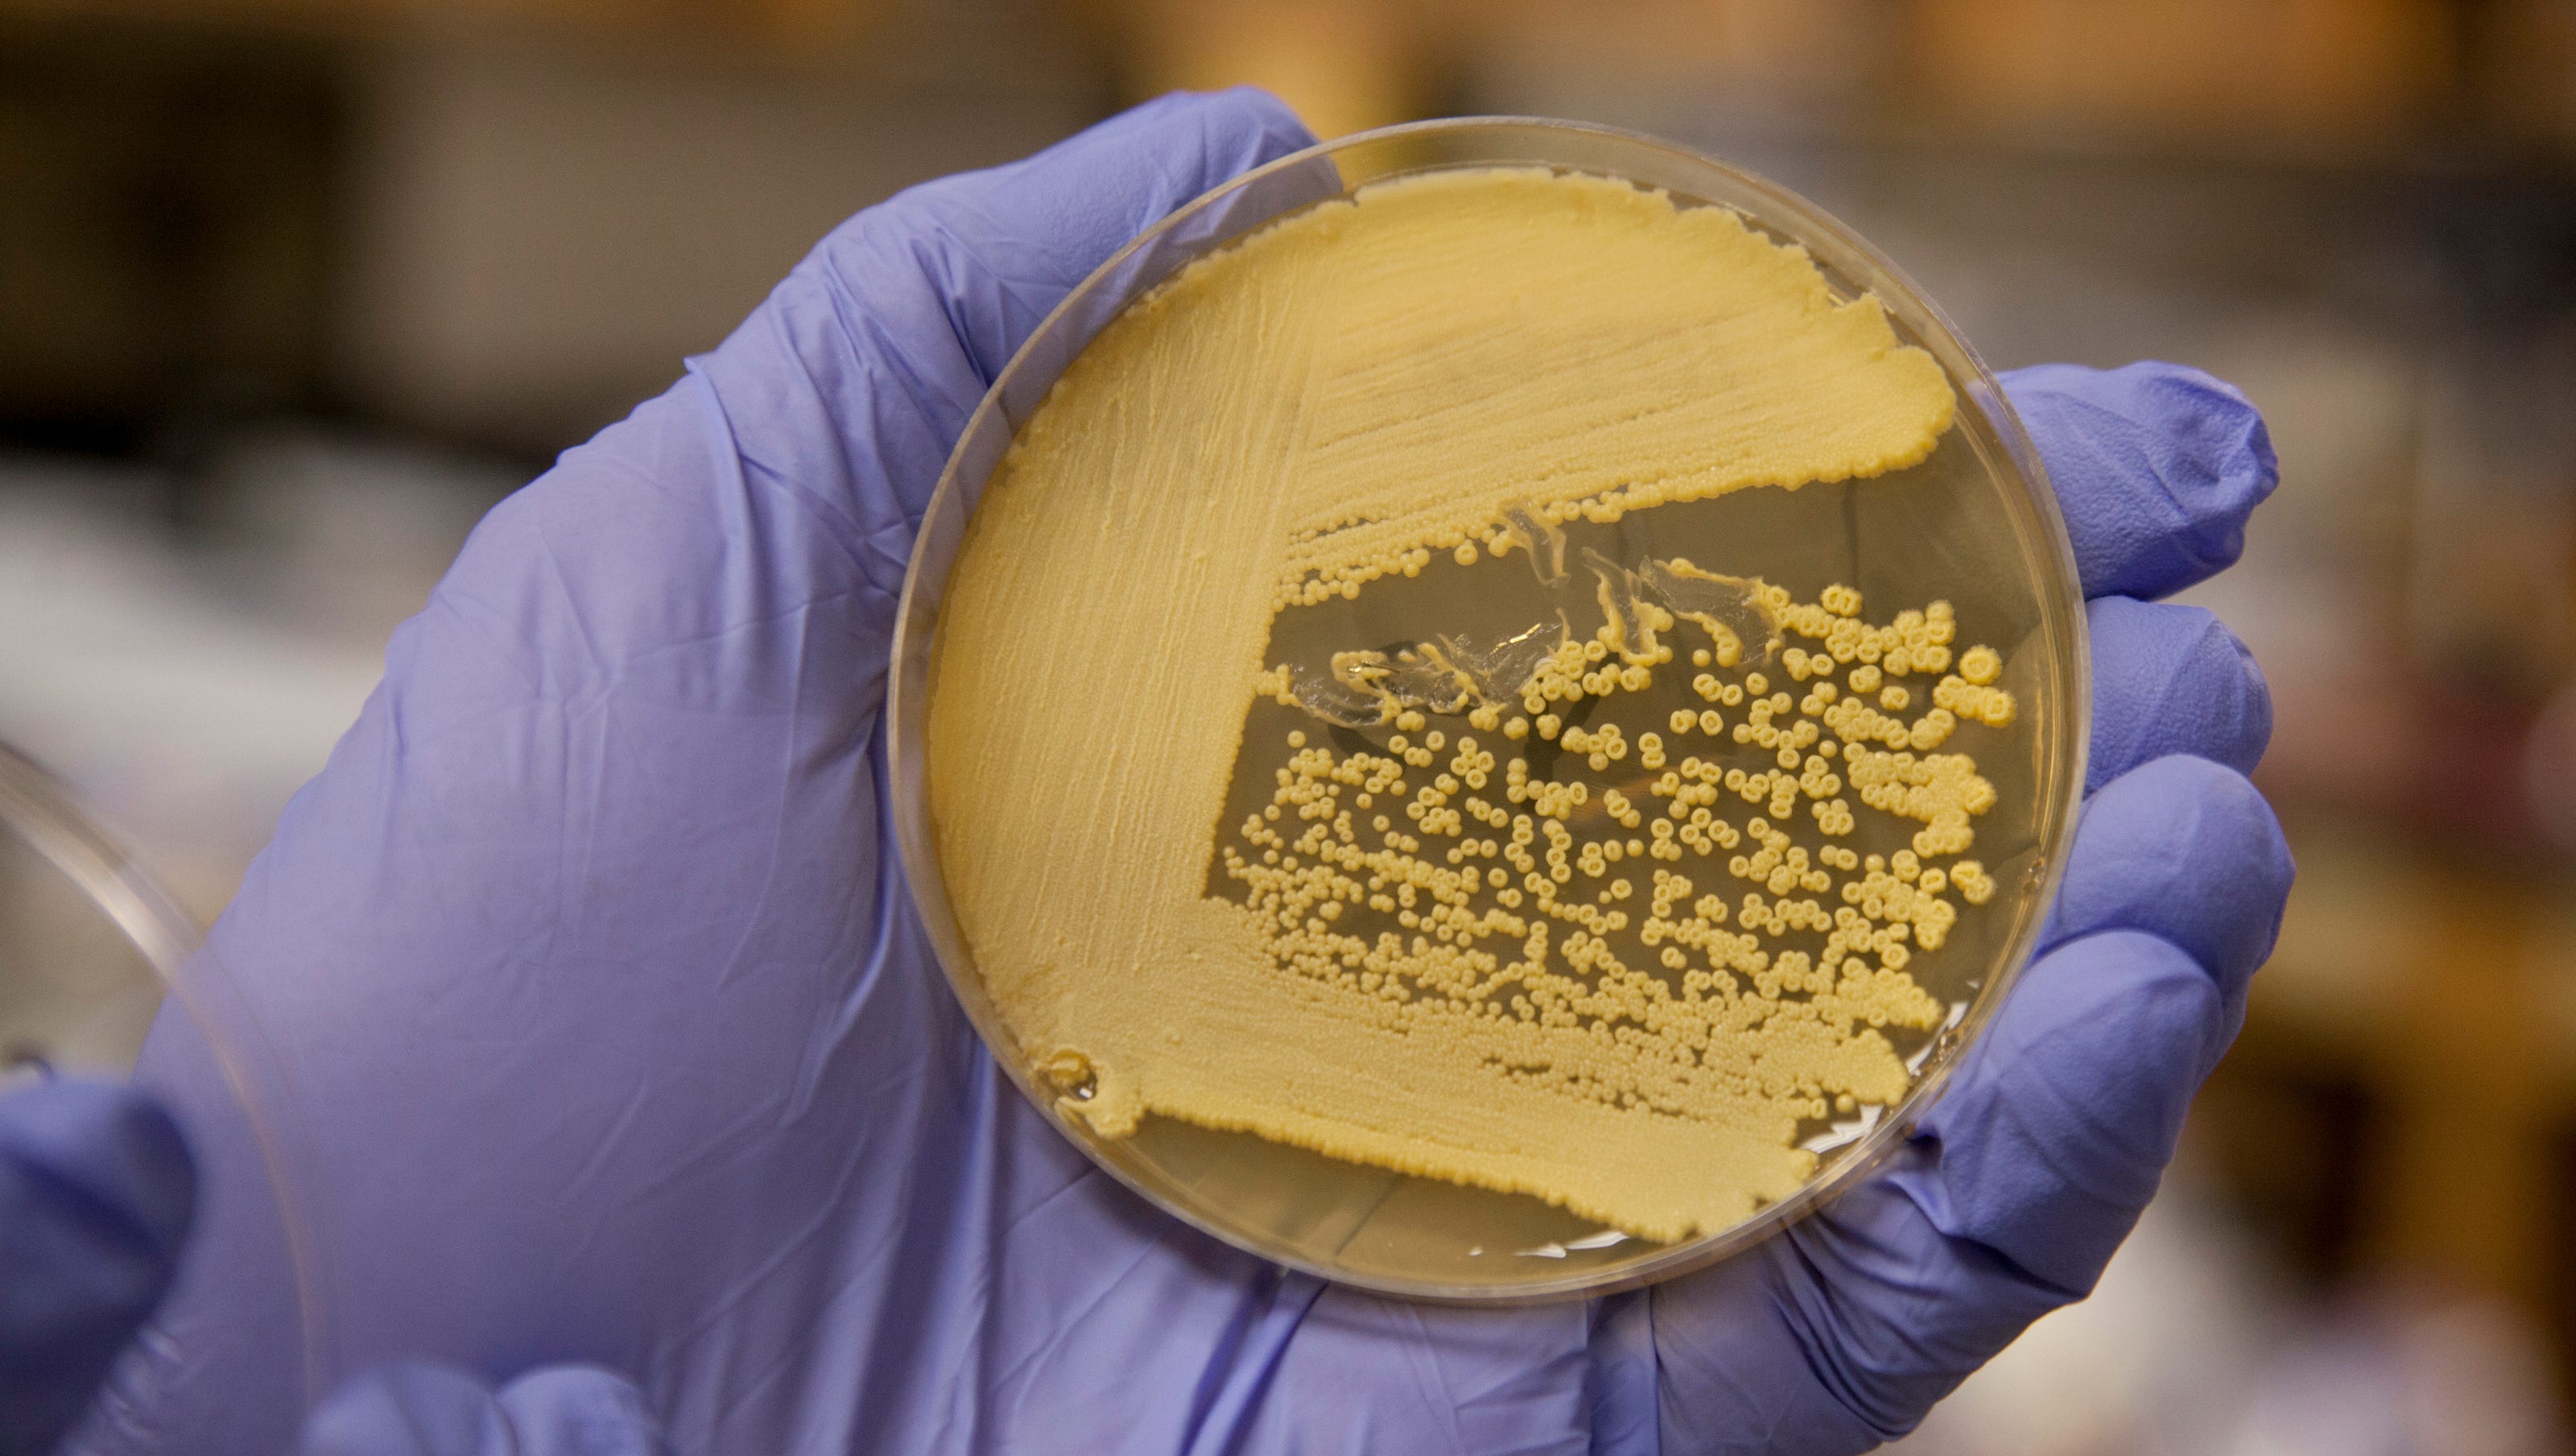 Culturing new bacteria in antibiotic revolution